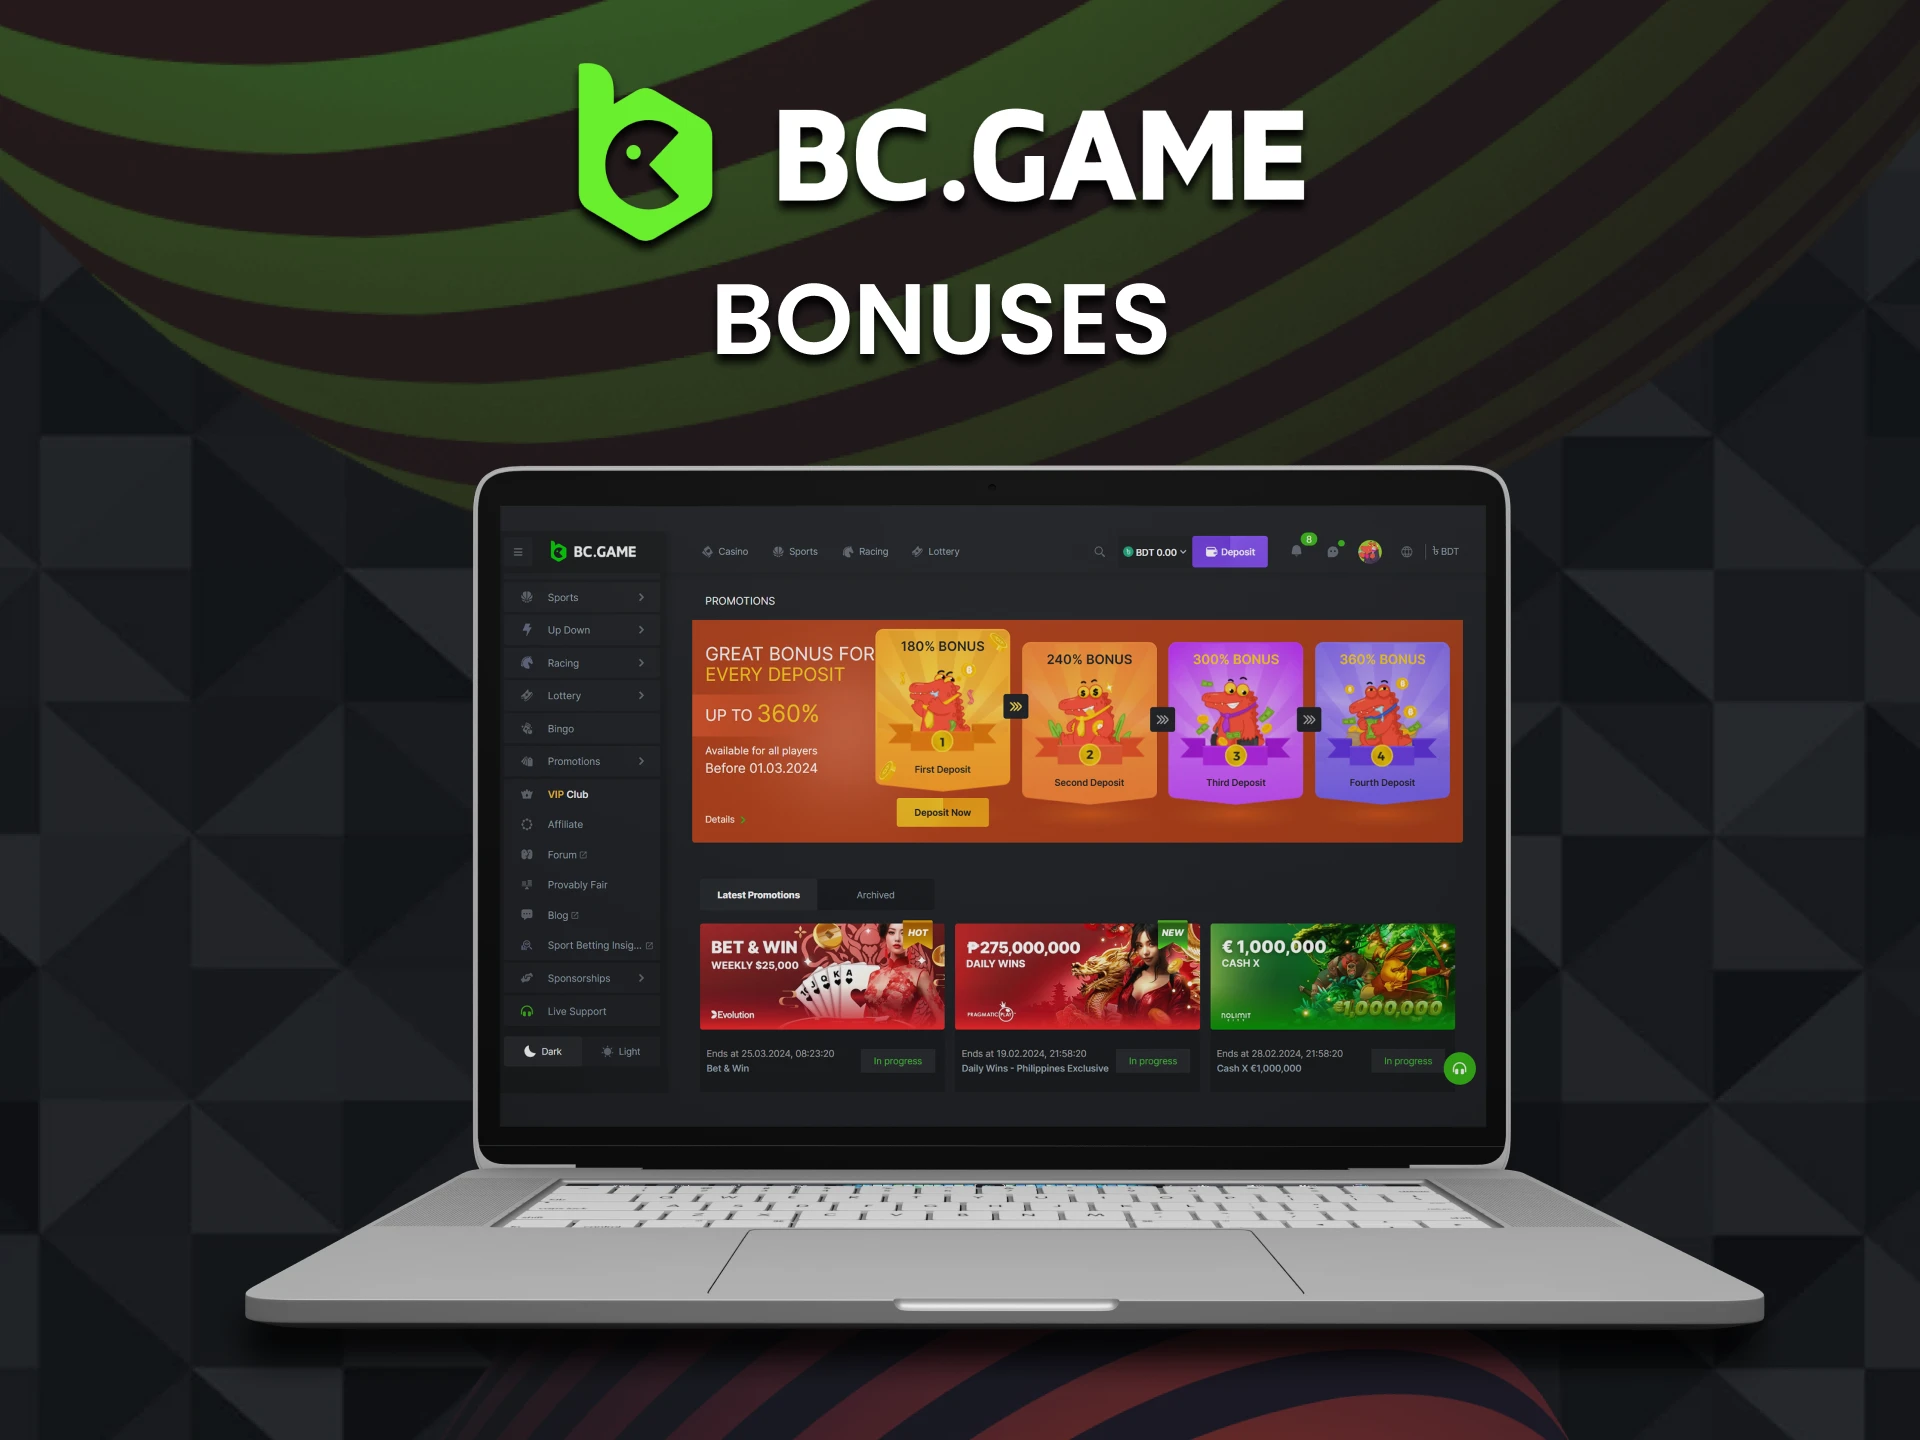 Get a bonus of up to 2,115,000 BDT after BC Game registration.